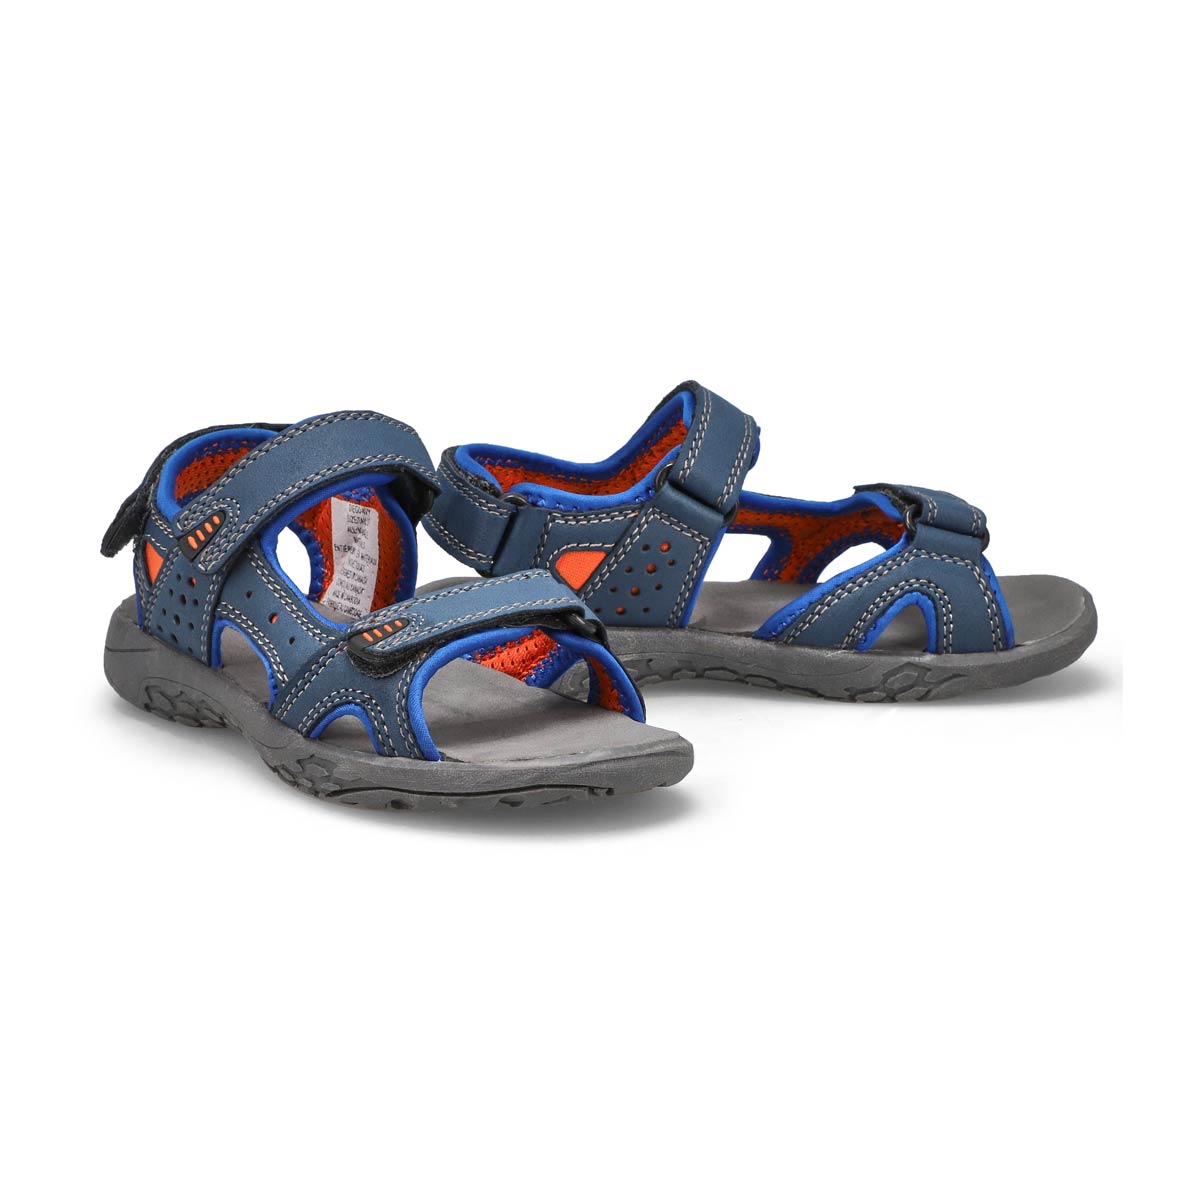 Boys's Diego sport sandals - navy orange